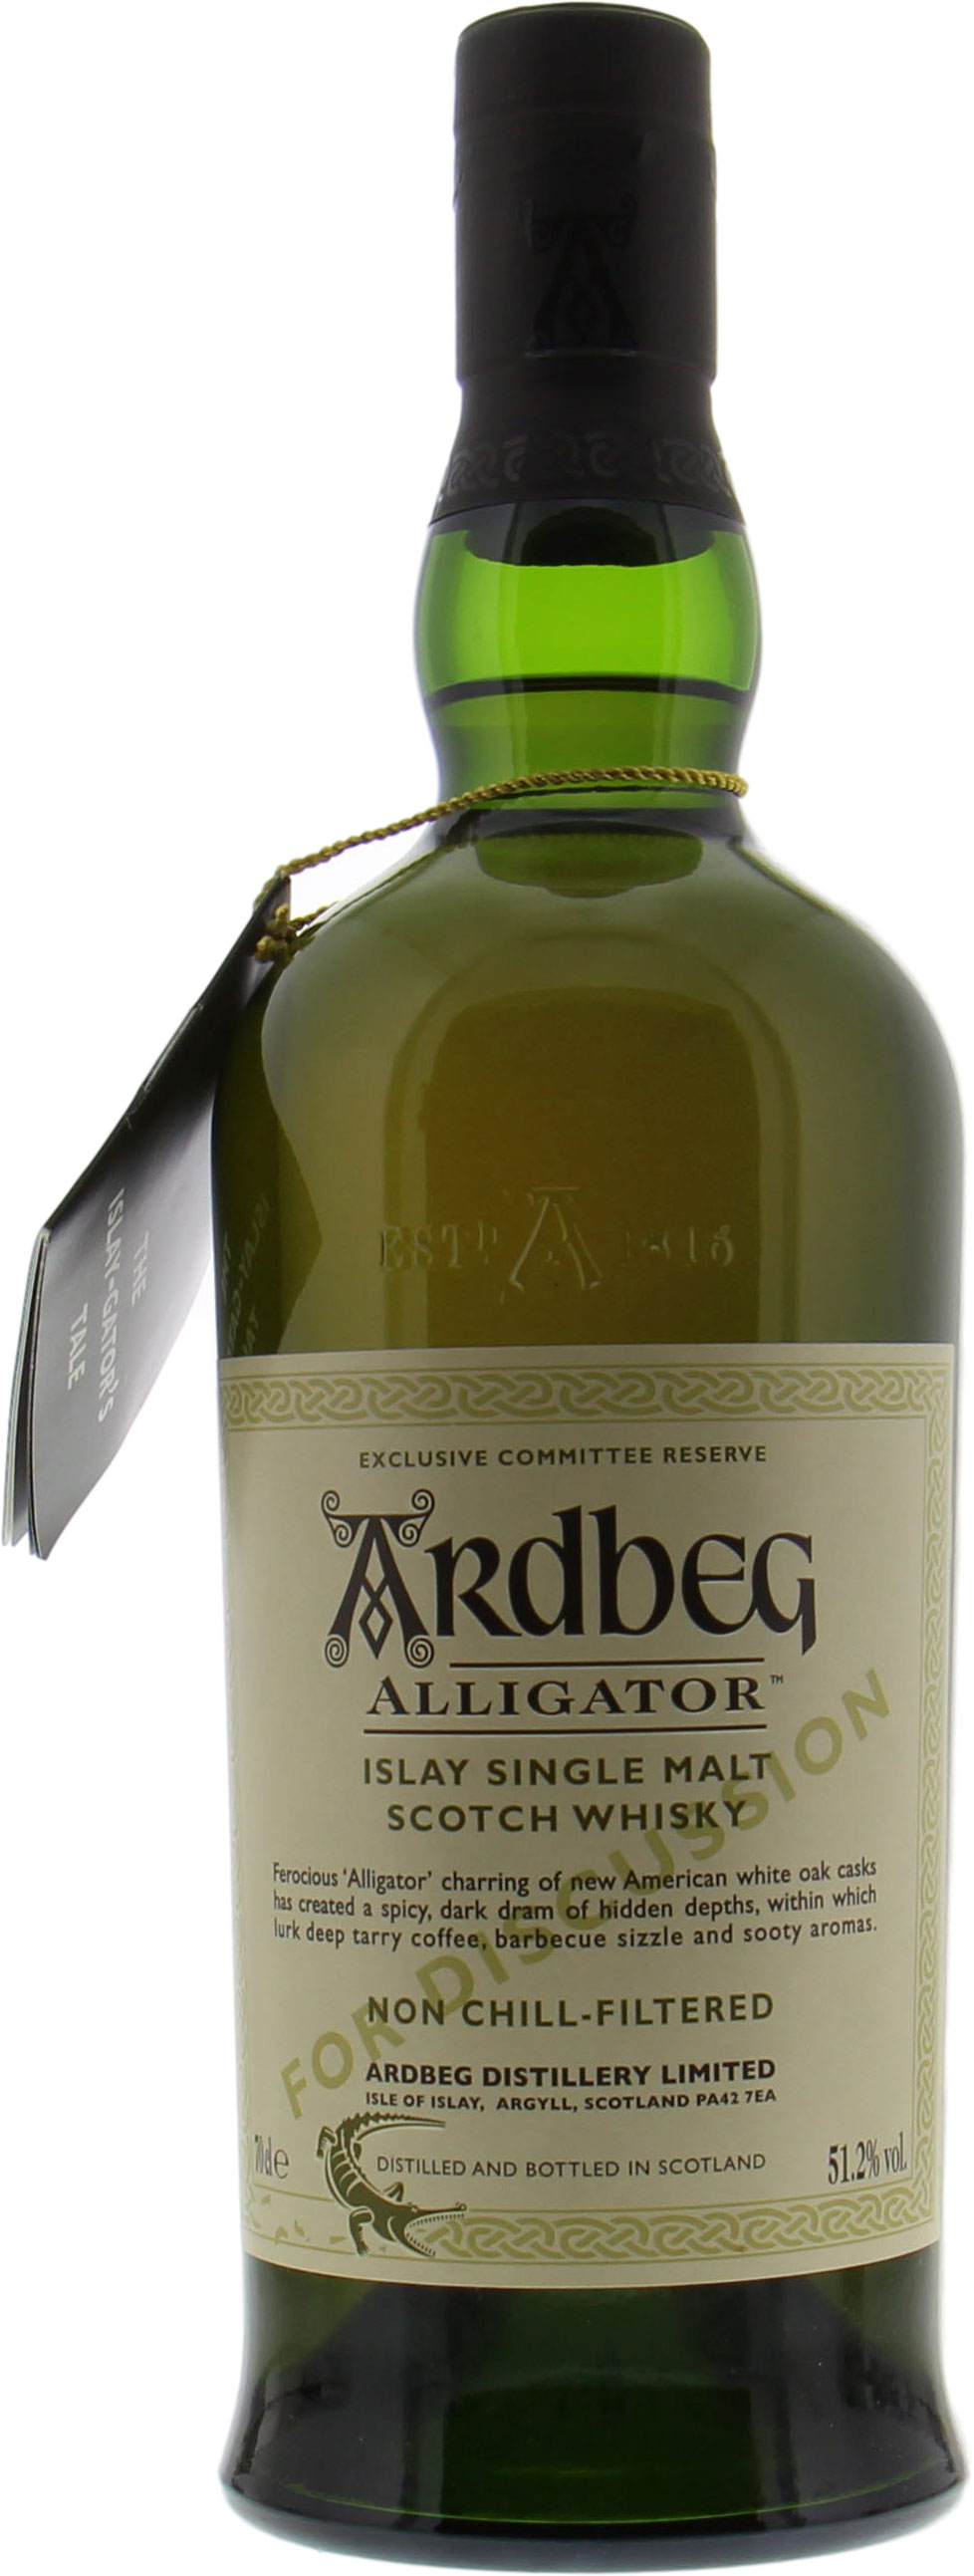 Ardbeg - Alligator Committee Reserve for Discussion 51.2% NV Nederlands 10001